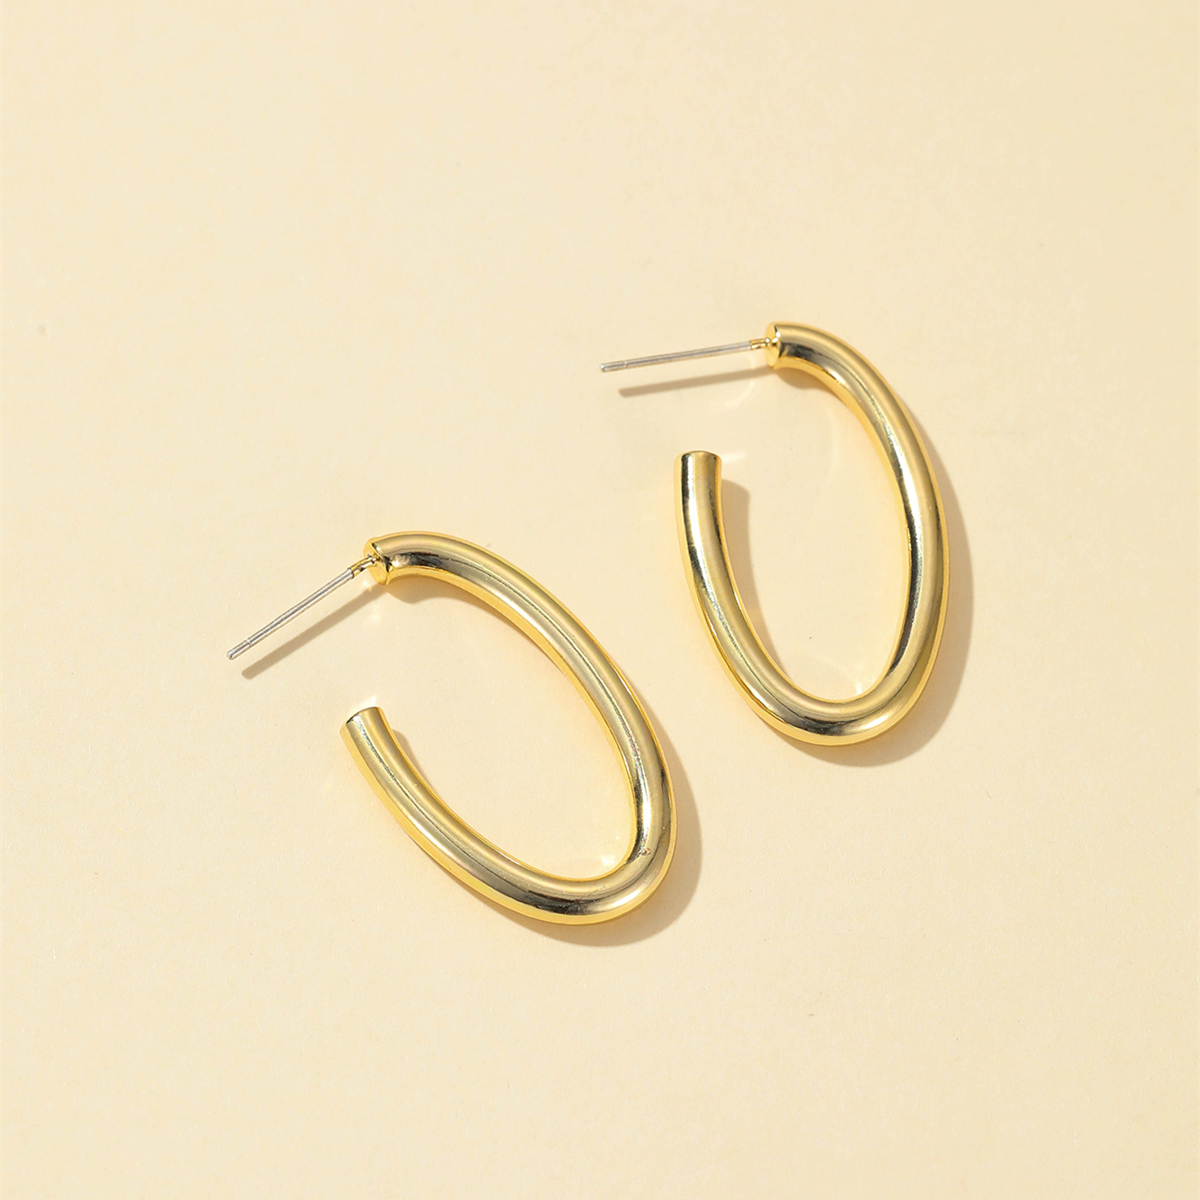 Leichter Luxus ins Pendler 925 silberne Nadel Ohrringe 2022 Kupfer beschichtetes Gold neue einfache Ohrringepicture3